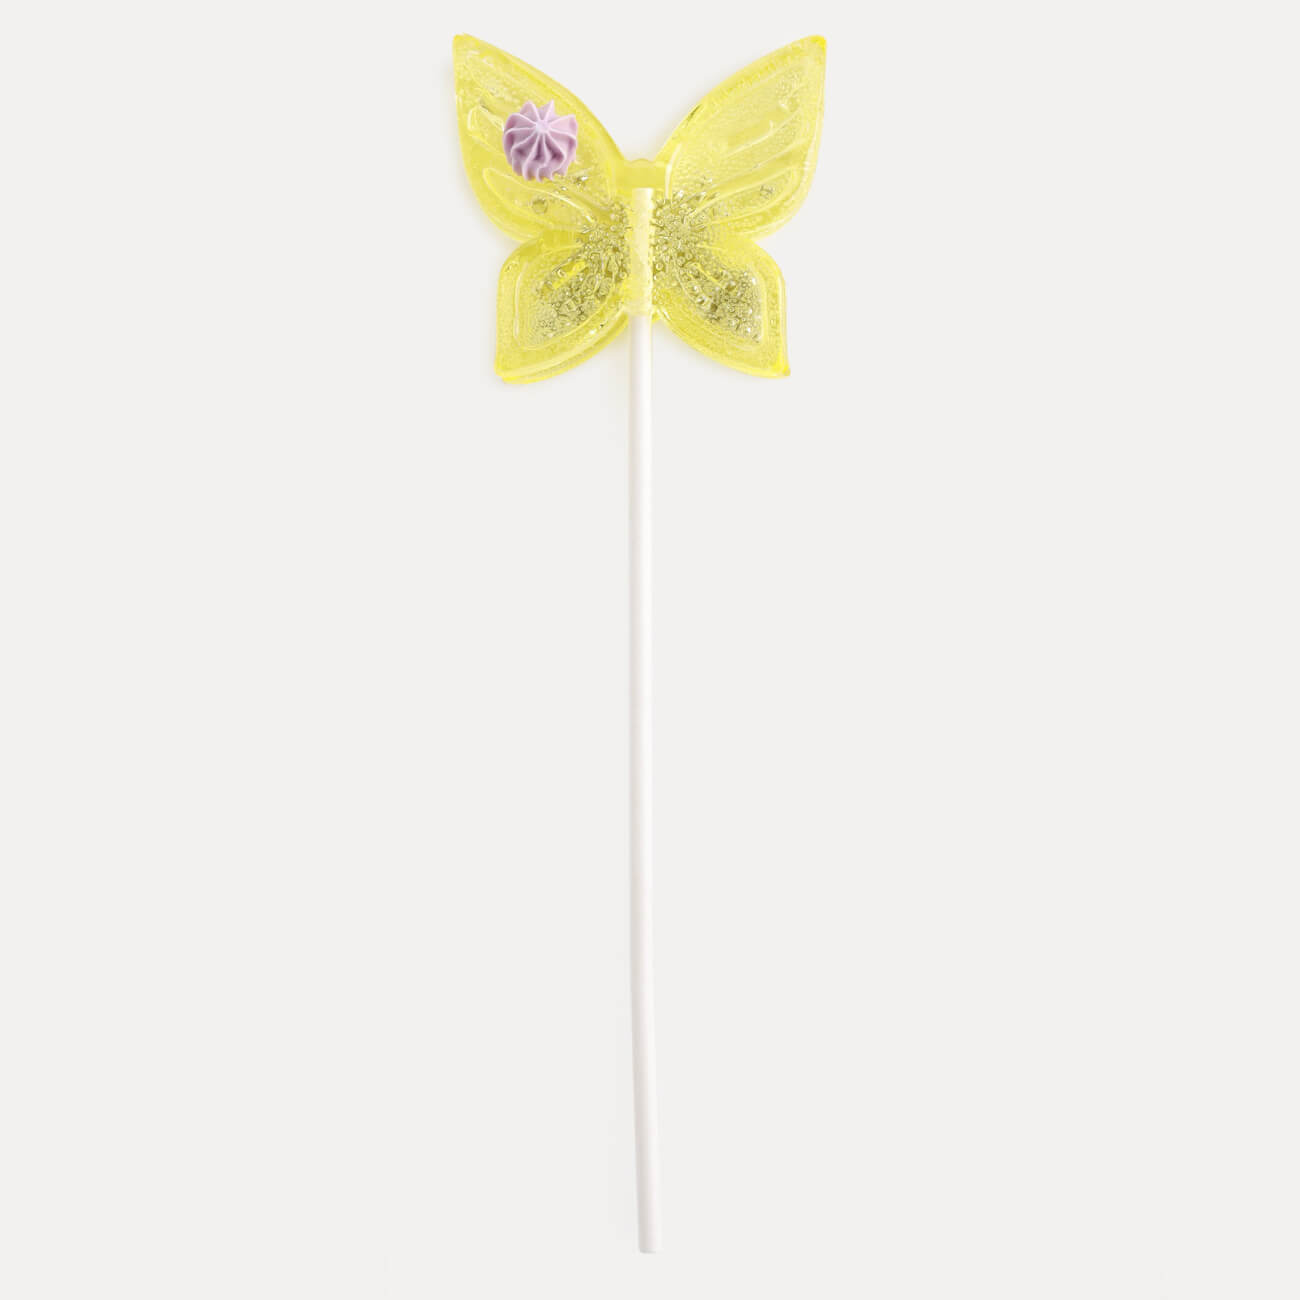 Леденец, 30 гр, погремушка, на палочке, изомальт, желтый, Бабочка, Butterfly леденец 30 гр погремушка на палочке изомальт желтый бабочка butterfly